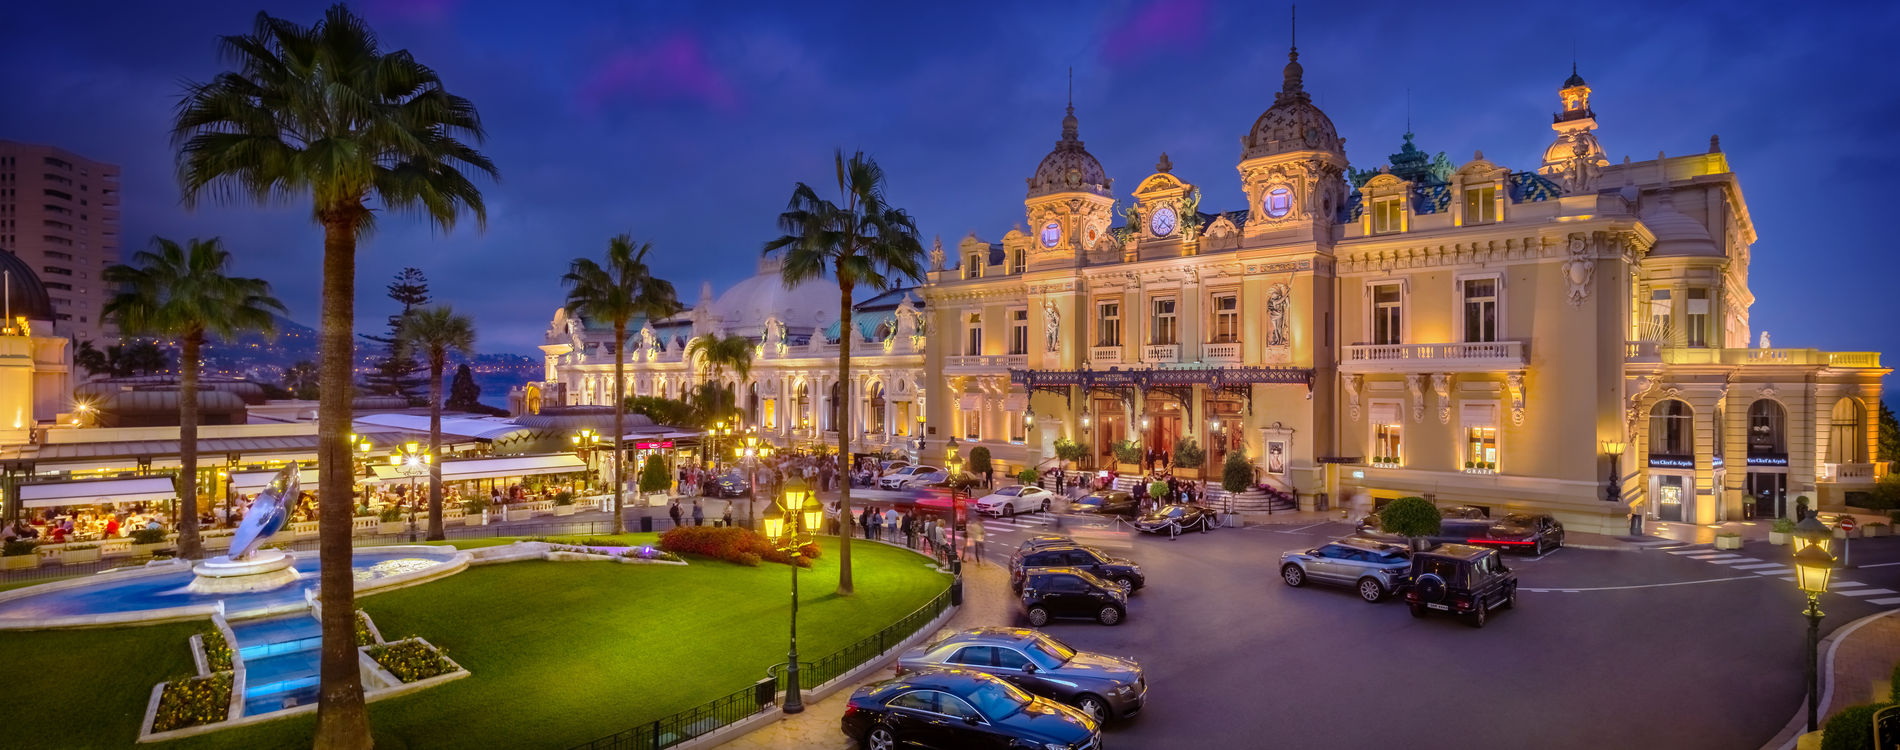 The casino in Monte Carlo